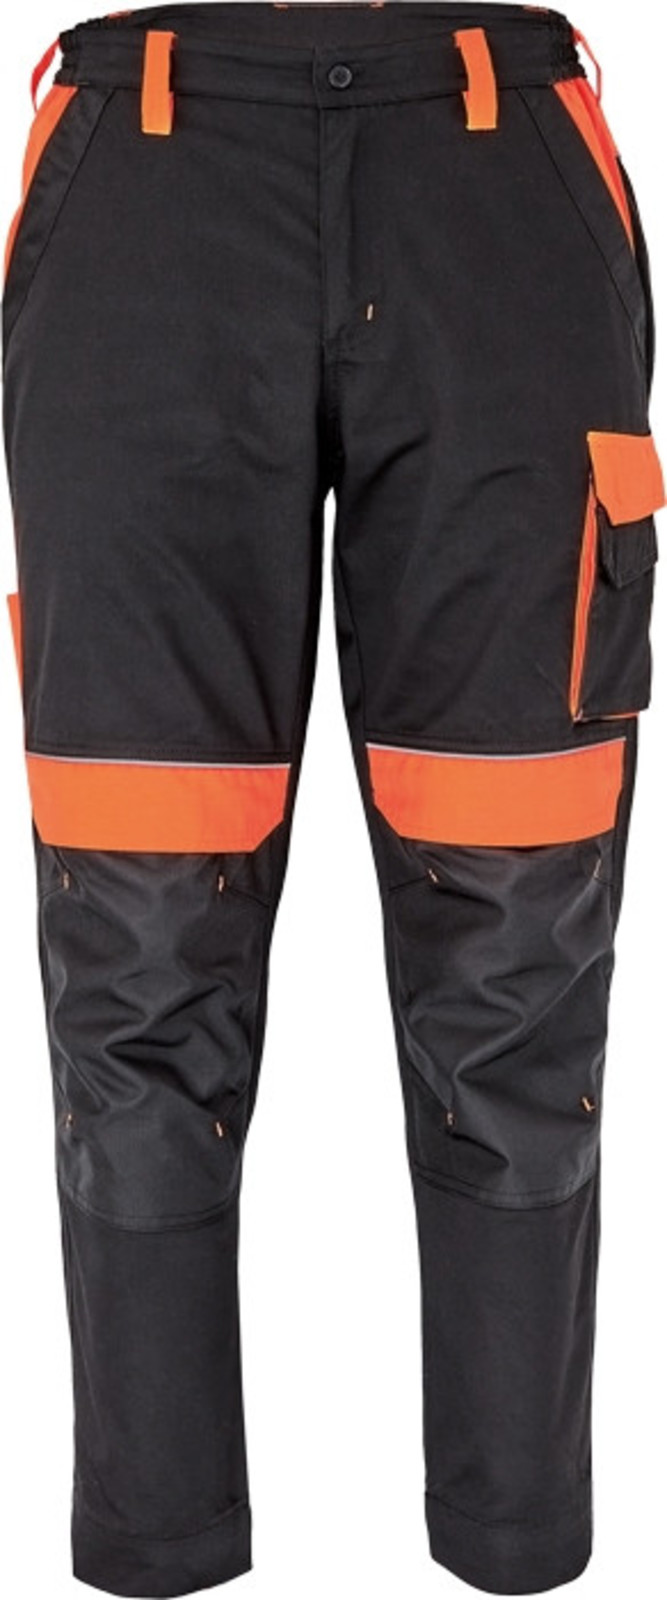 Pracovné nohavice Cerva Max Vivo pánske  - veľkosť: 44, farba: čierna/oranžová